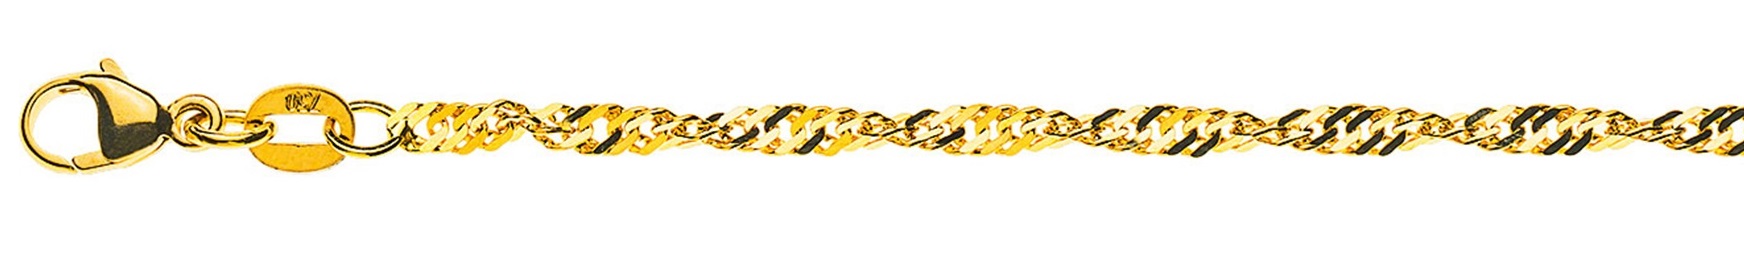 AURONOS Prestige Yellow Gold 18K Singapore Necklace 42cm 2.4mm